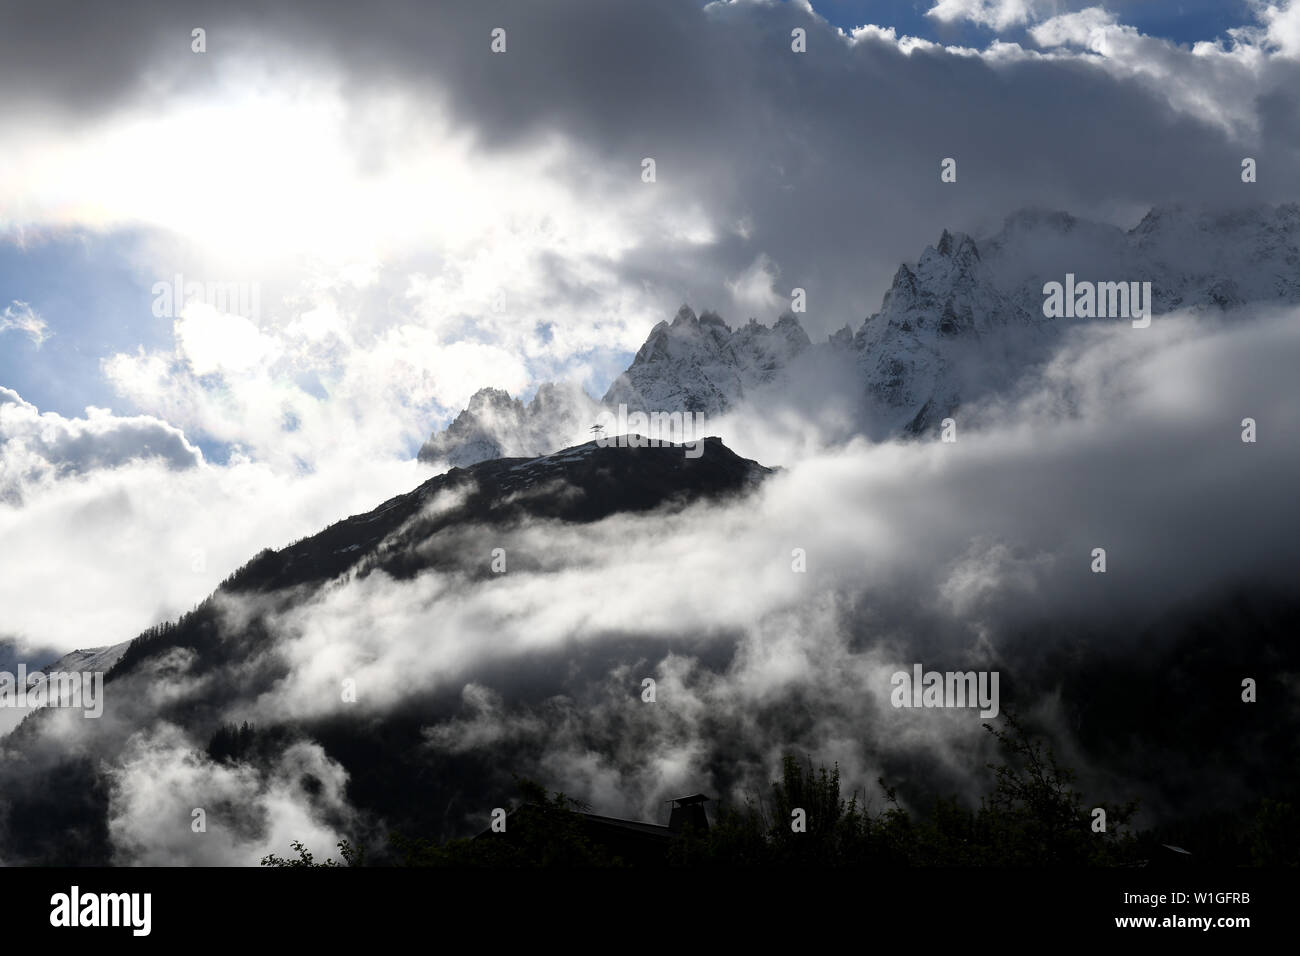 Basse nubi e drammatica luce sul massiccio del Monte Bianco delle Alpi, vicino a Chamonix, Giugno 2019 Foto Stock